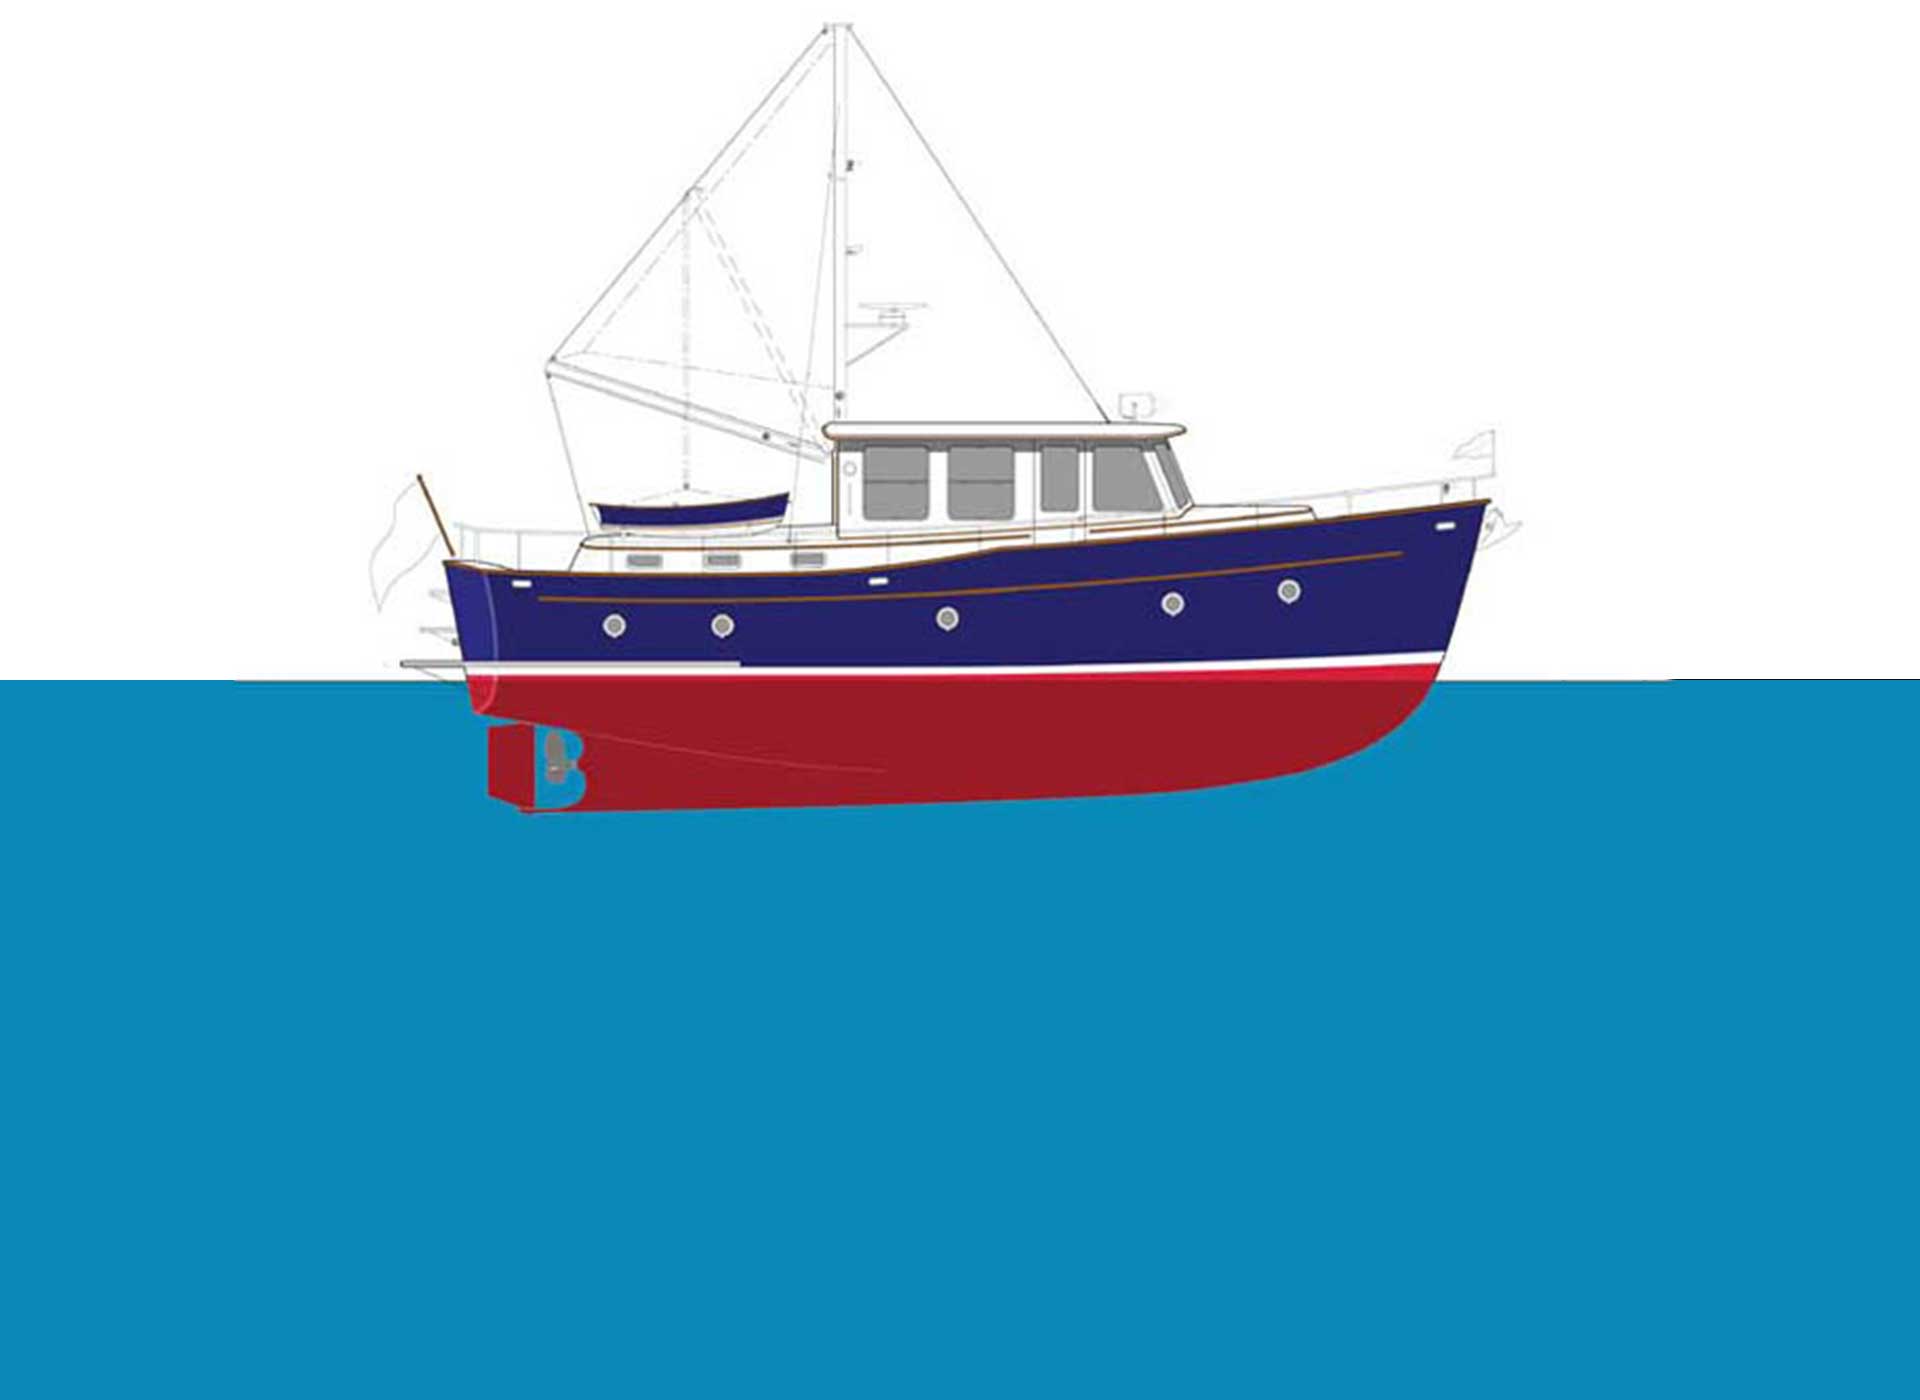 40 Trawler